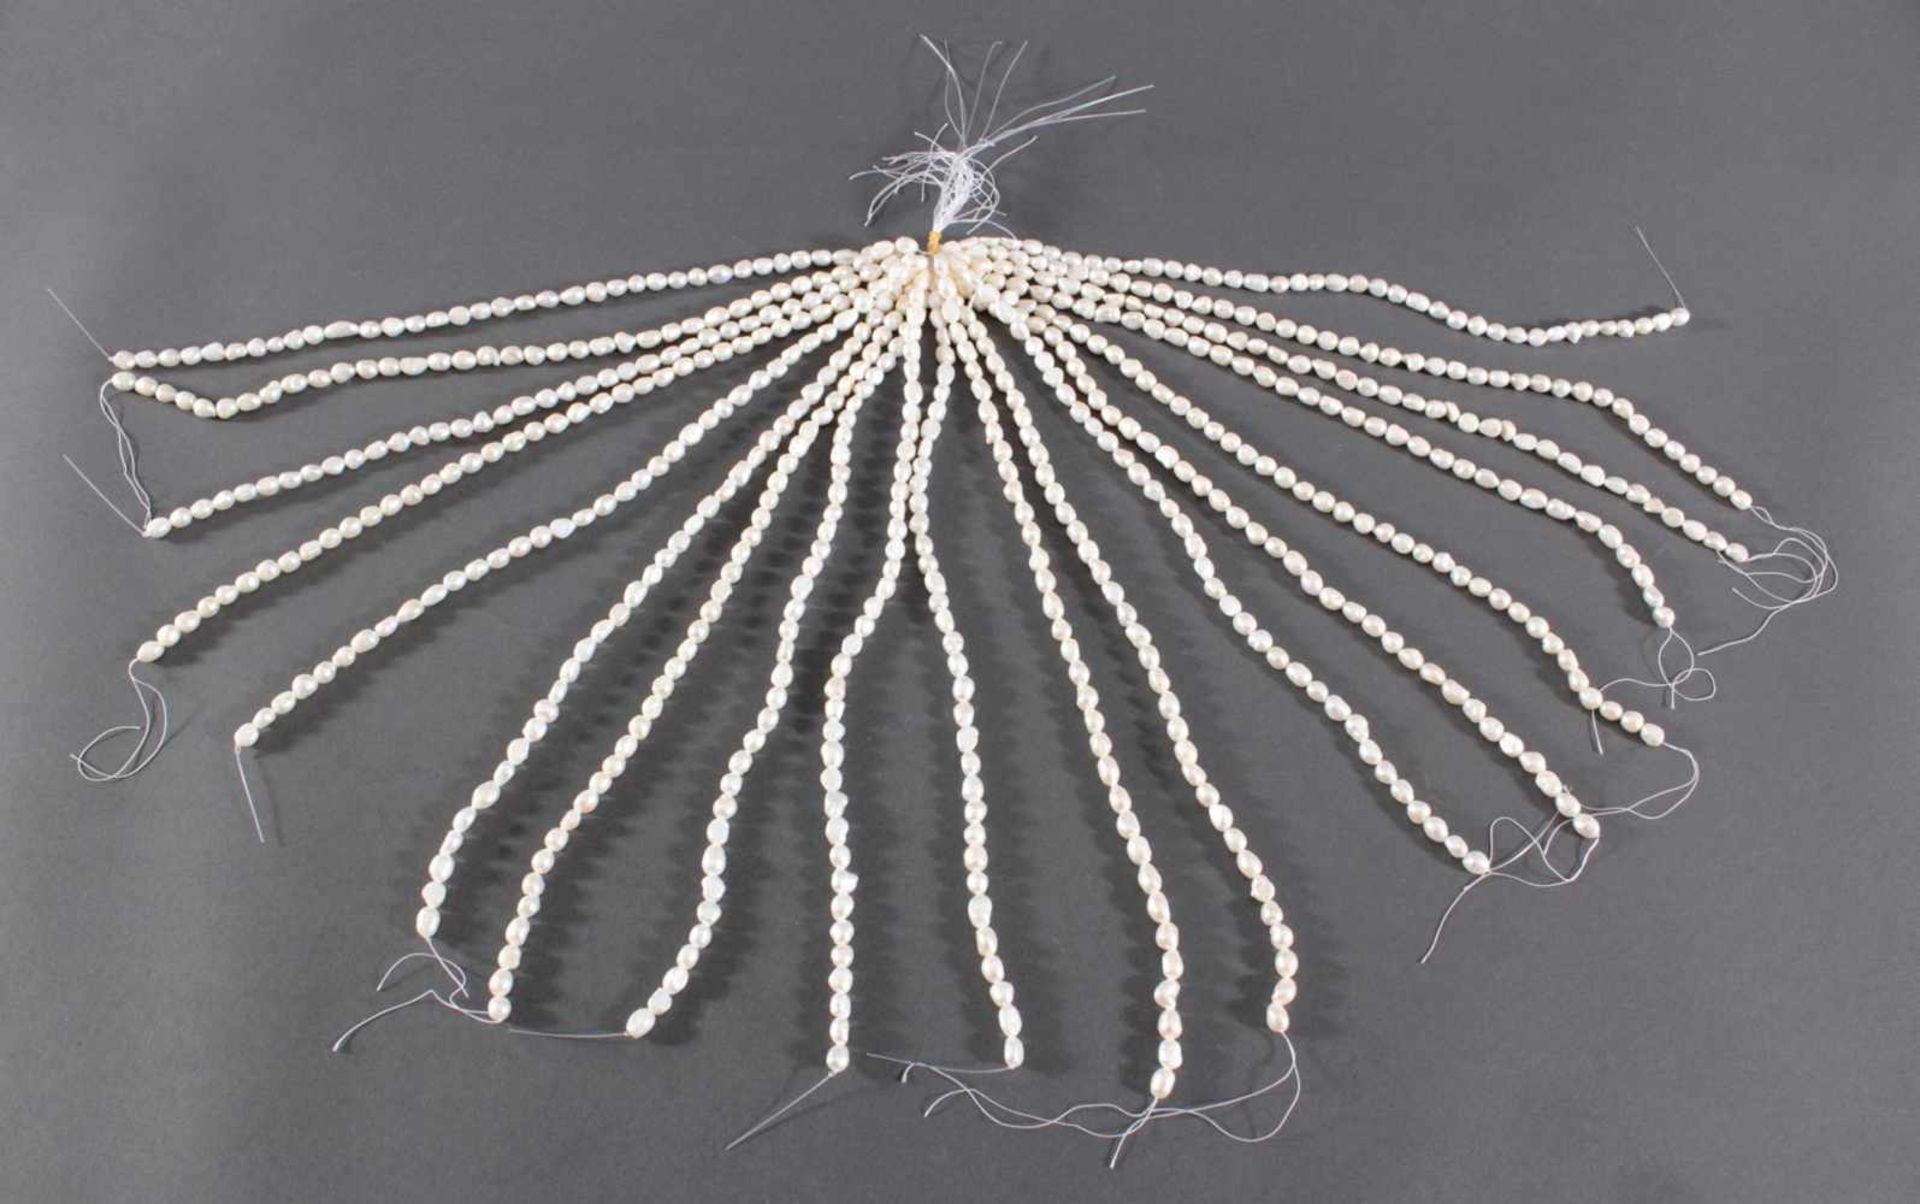 Große längliche Reis (Zucht) Perlen9-10 mm, 19 Stränge, je ca. 37 cm lang, insgesamt etwa 1000